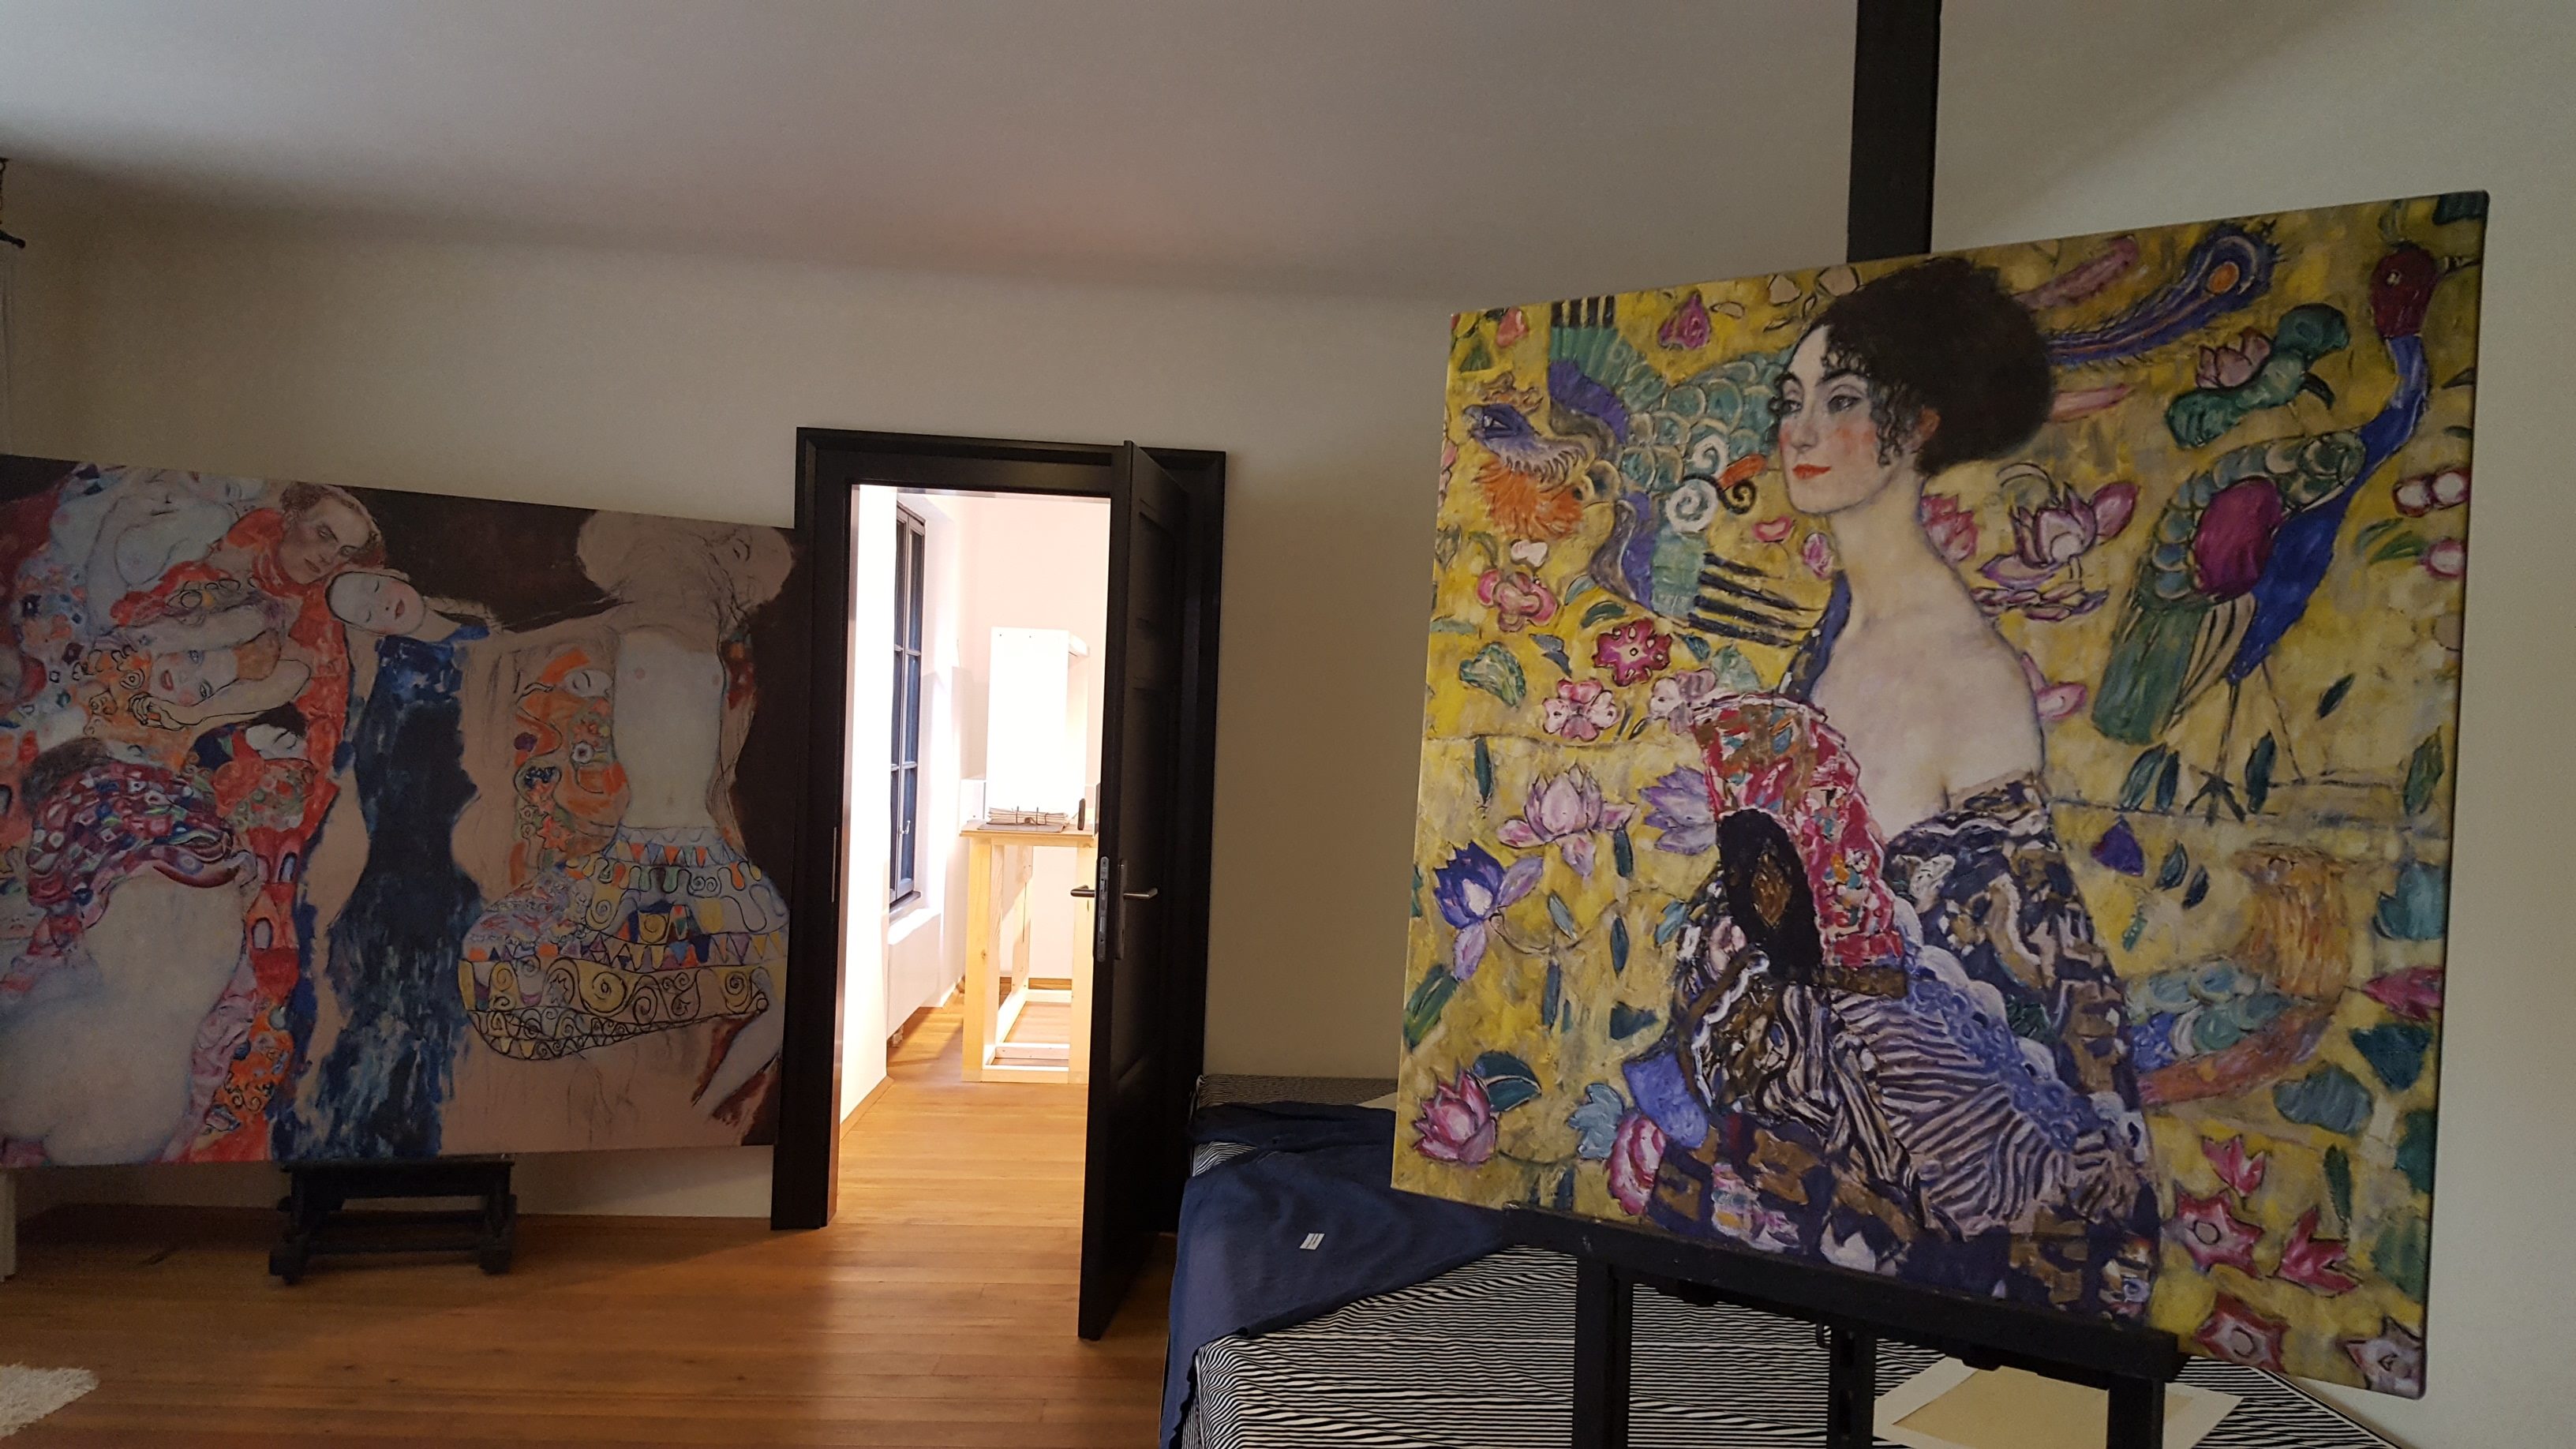  De Vienne 1900 au MAK à la Villa Klimt/aufildeslieux.fr/ L'atelier de Klimt avec peinture "The Bride" à gauche et "Lady with fan "à droite ©K.HIBBS